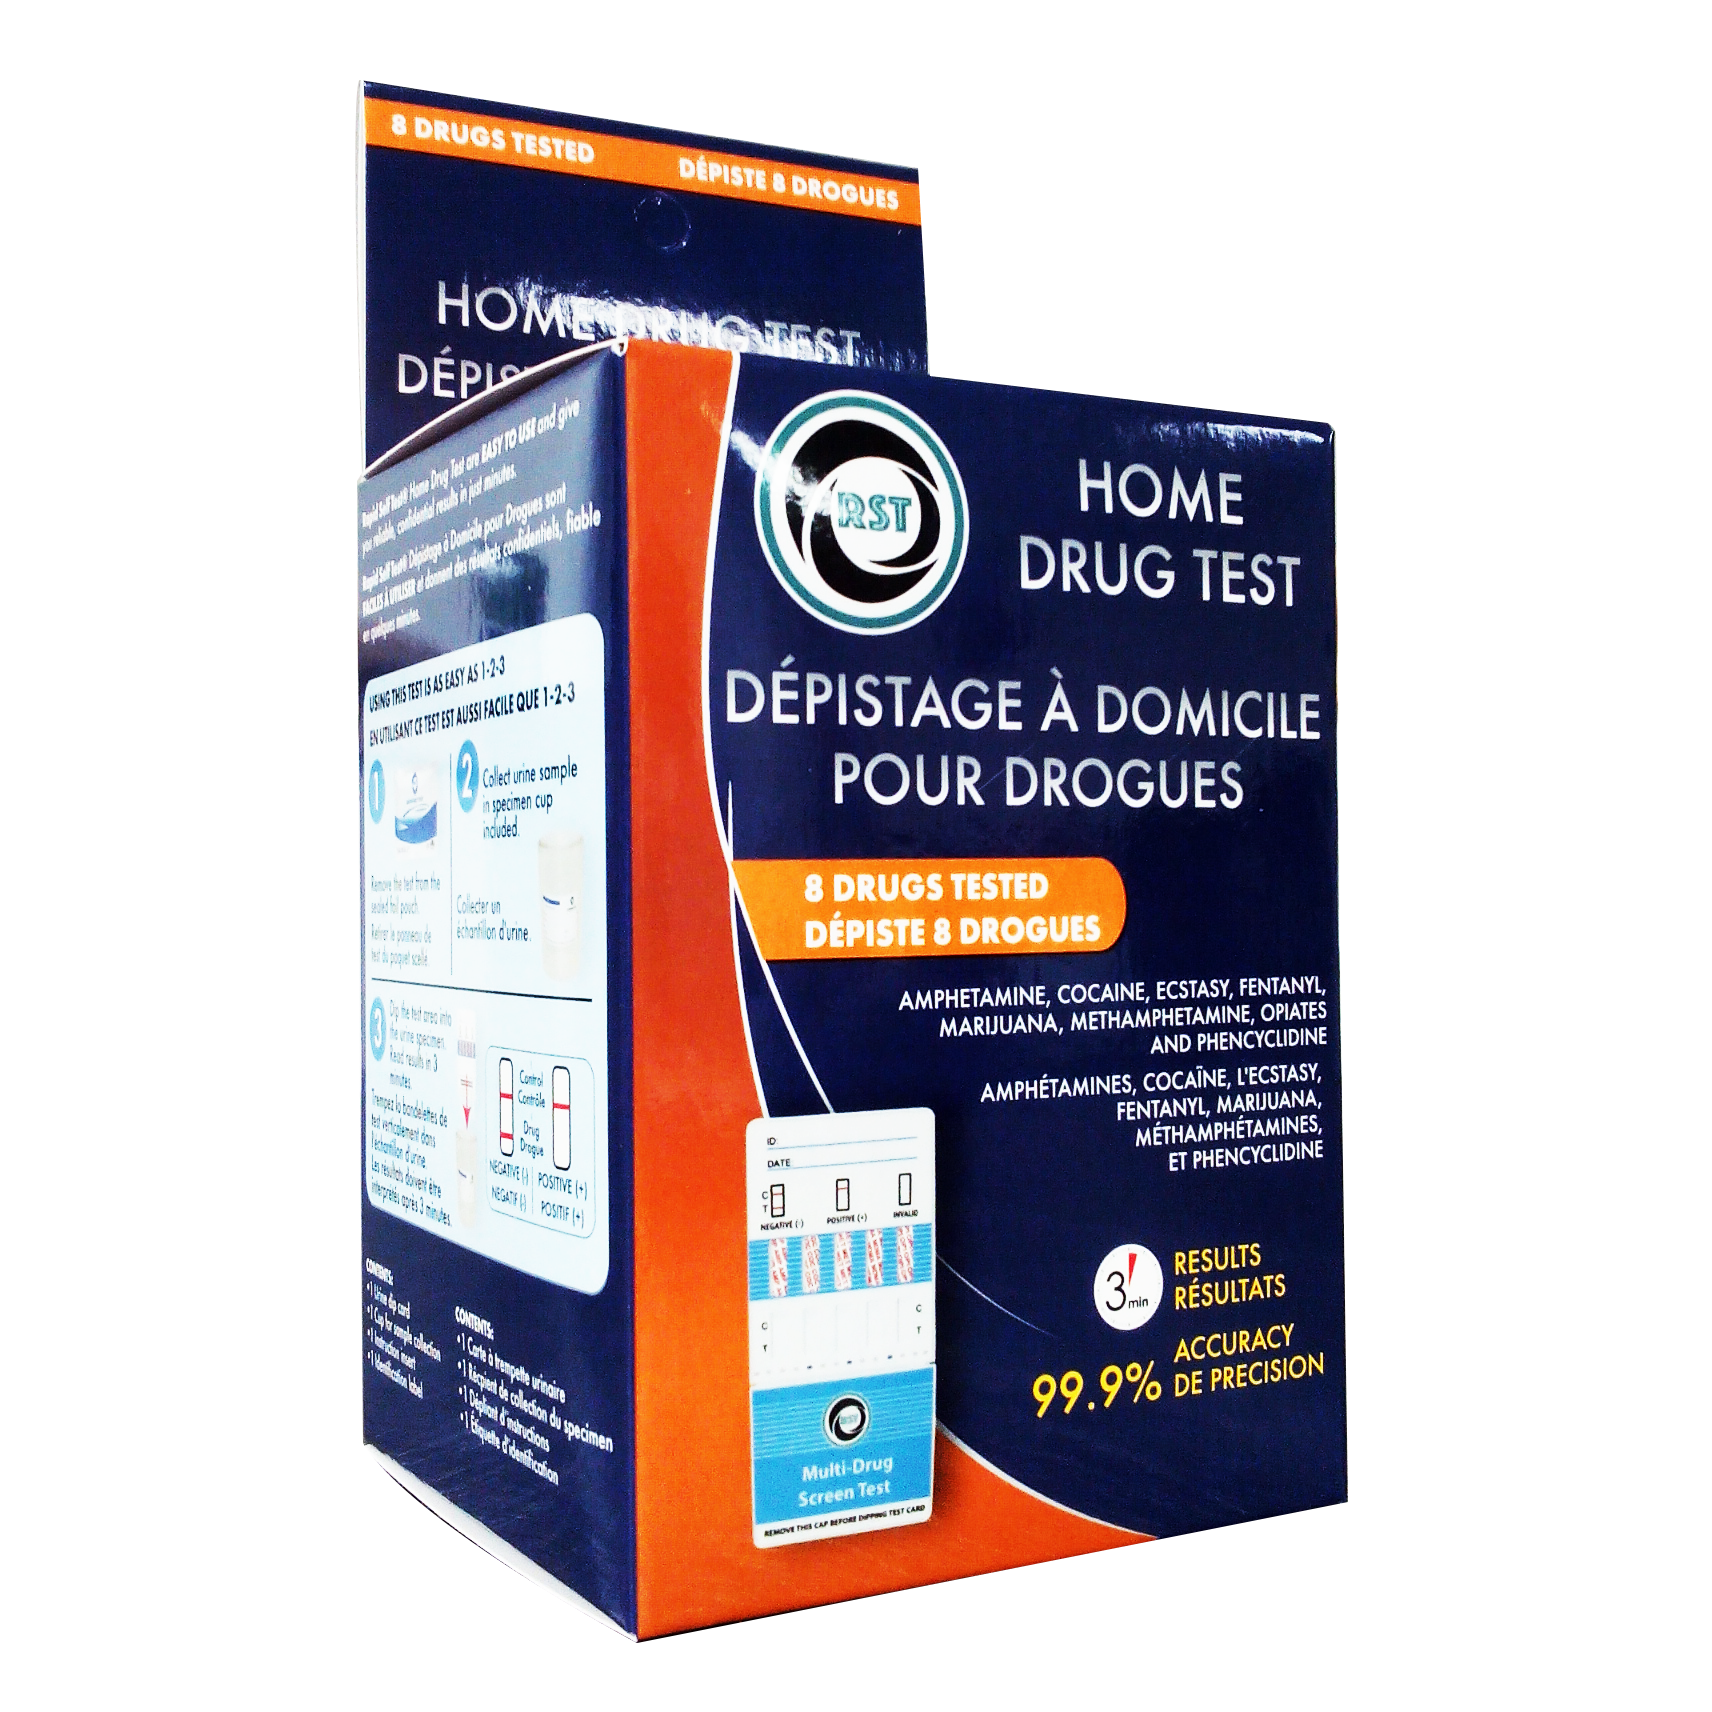 Rapid Self Test Home drug Test kit – 8 drugs